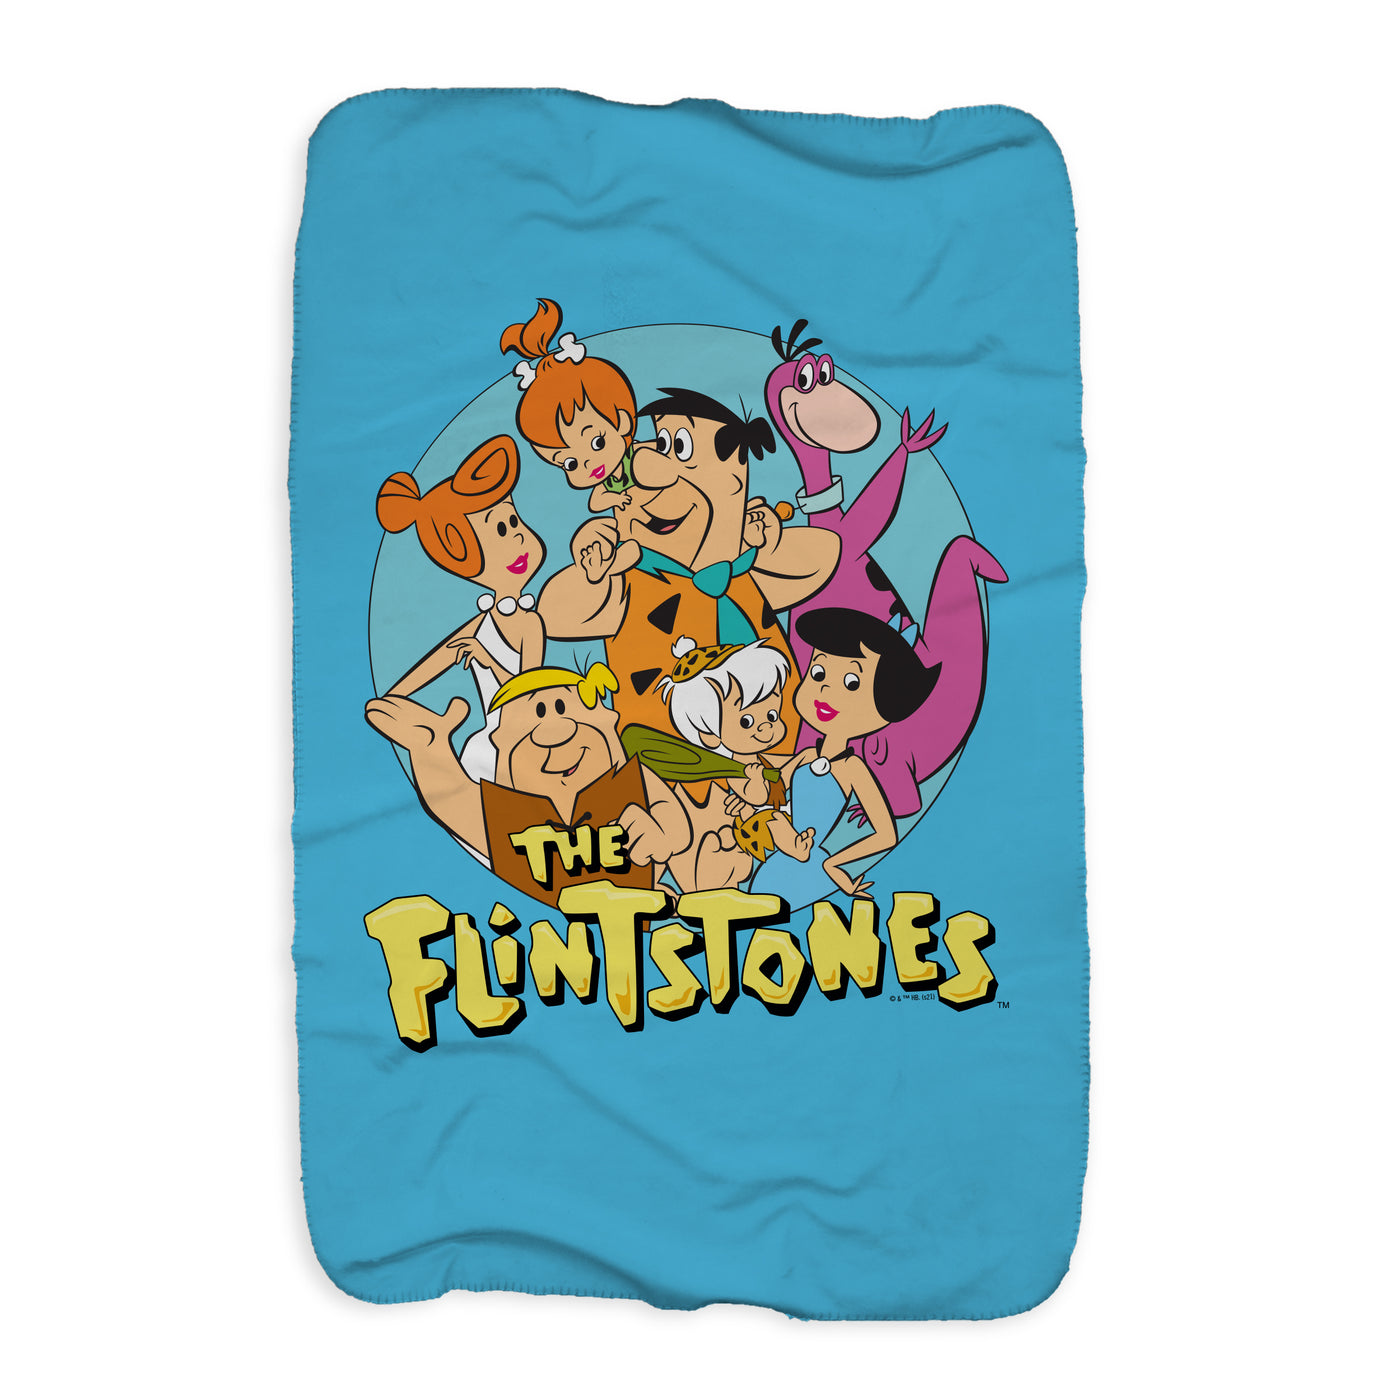 The Flintstones Character Line Up Sherpa Blanket